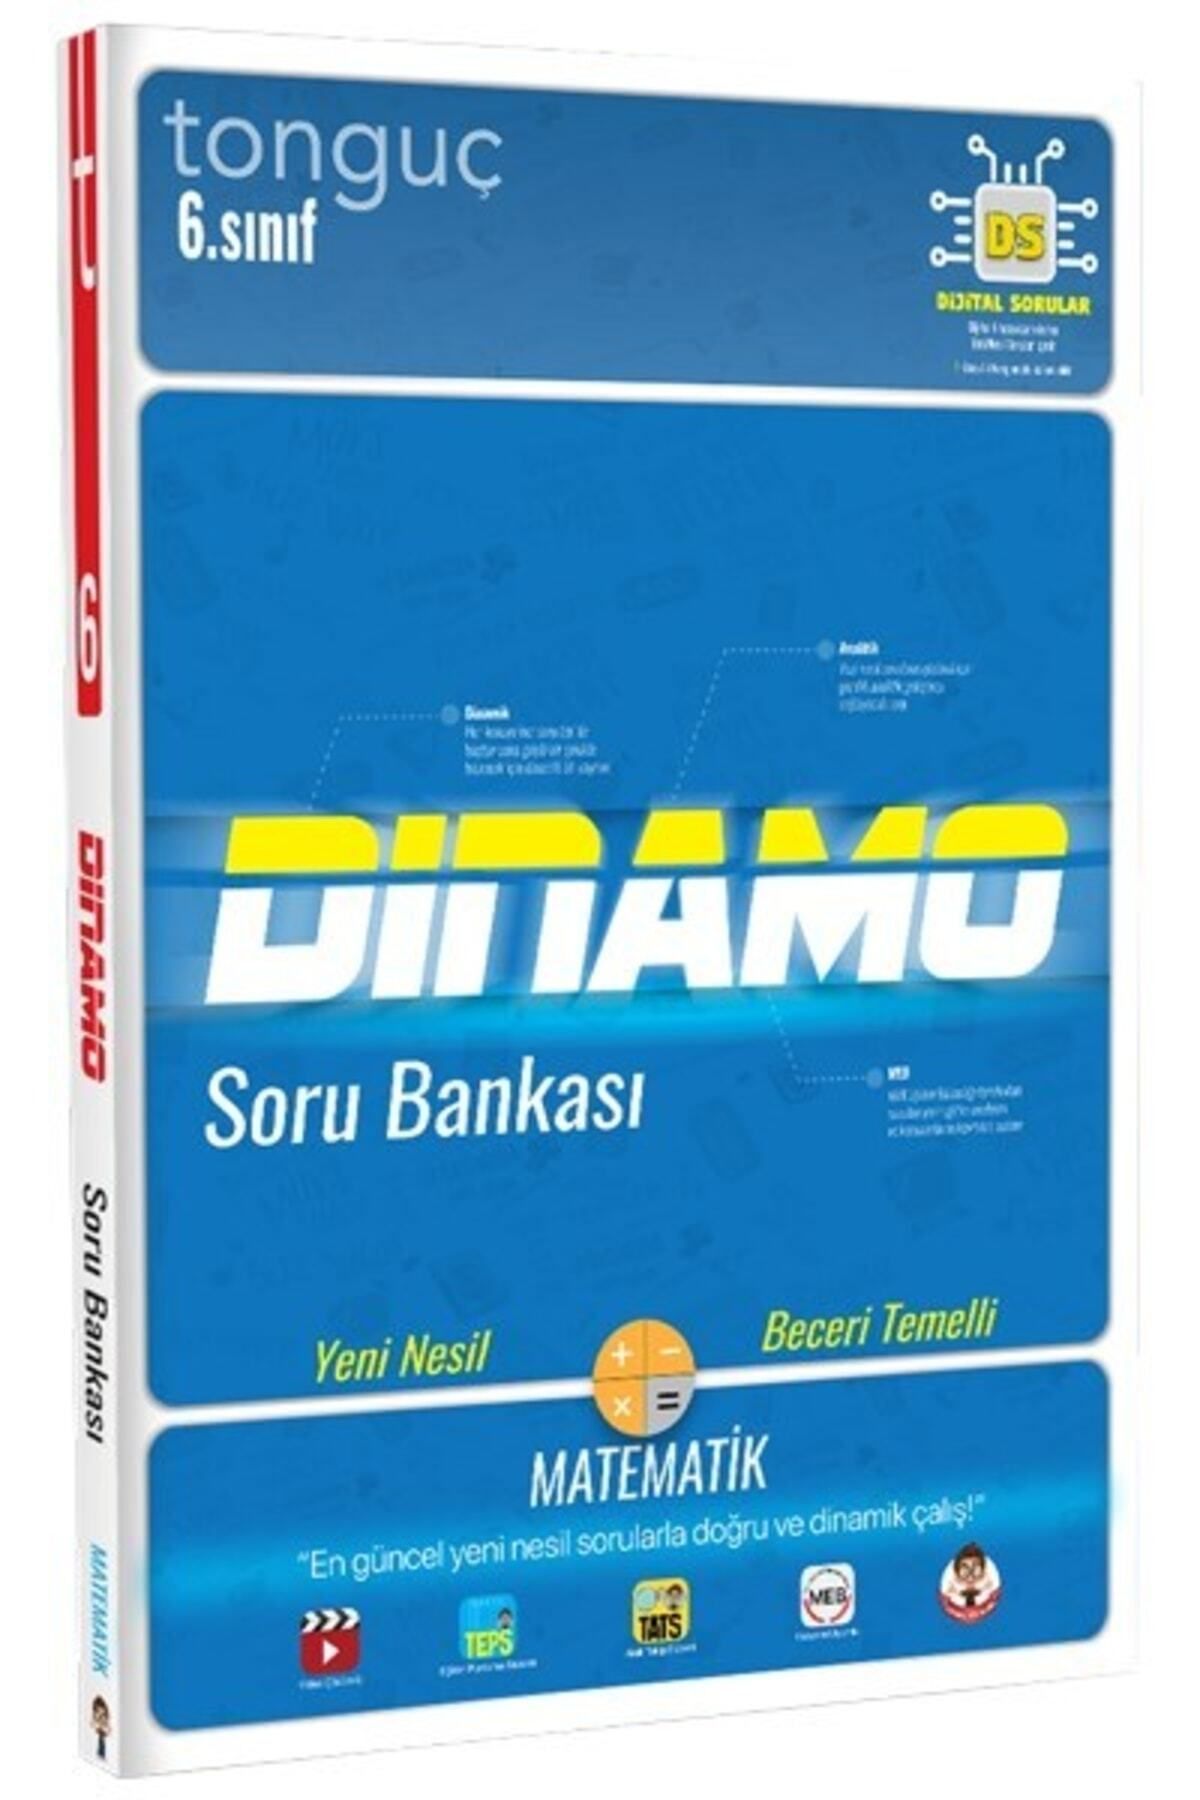 Tonguç Yayınları Tonguç 6. Sınıf Matematik Dinamo Soru Bankası Yeni !